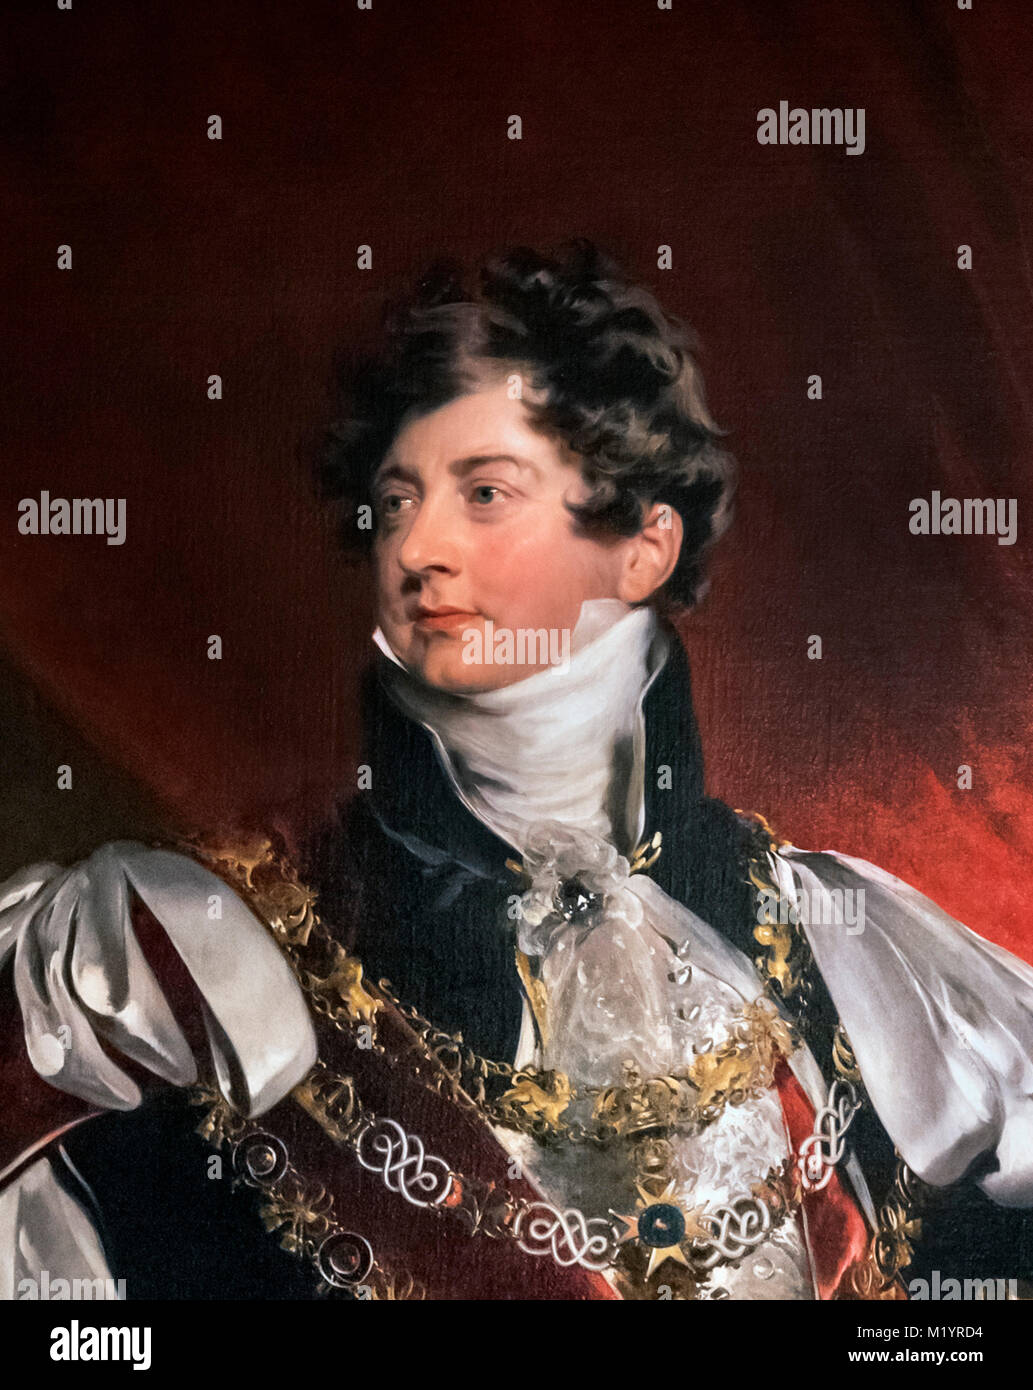 George IV. Portrait du roi George IV, attribué à l'atelier de sir Thomas Lawrence. Détail d'une grande peinture, M1YRD5. Banque D'Images